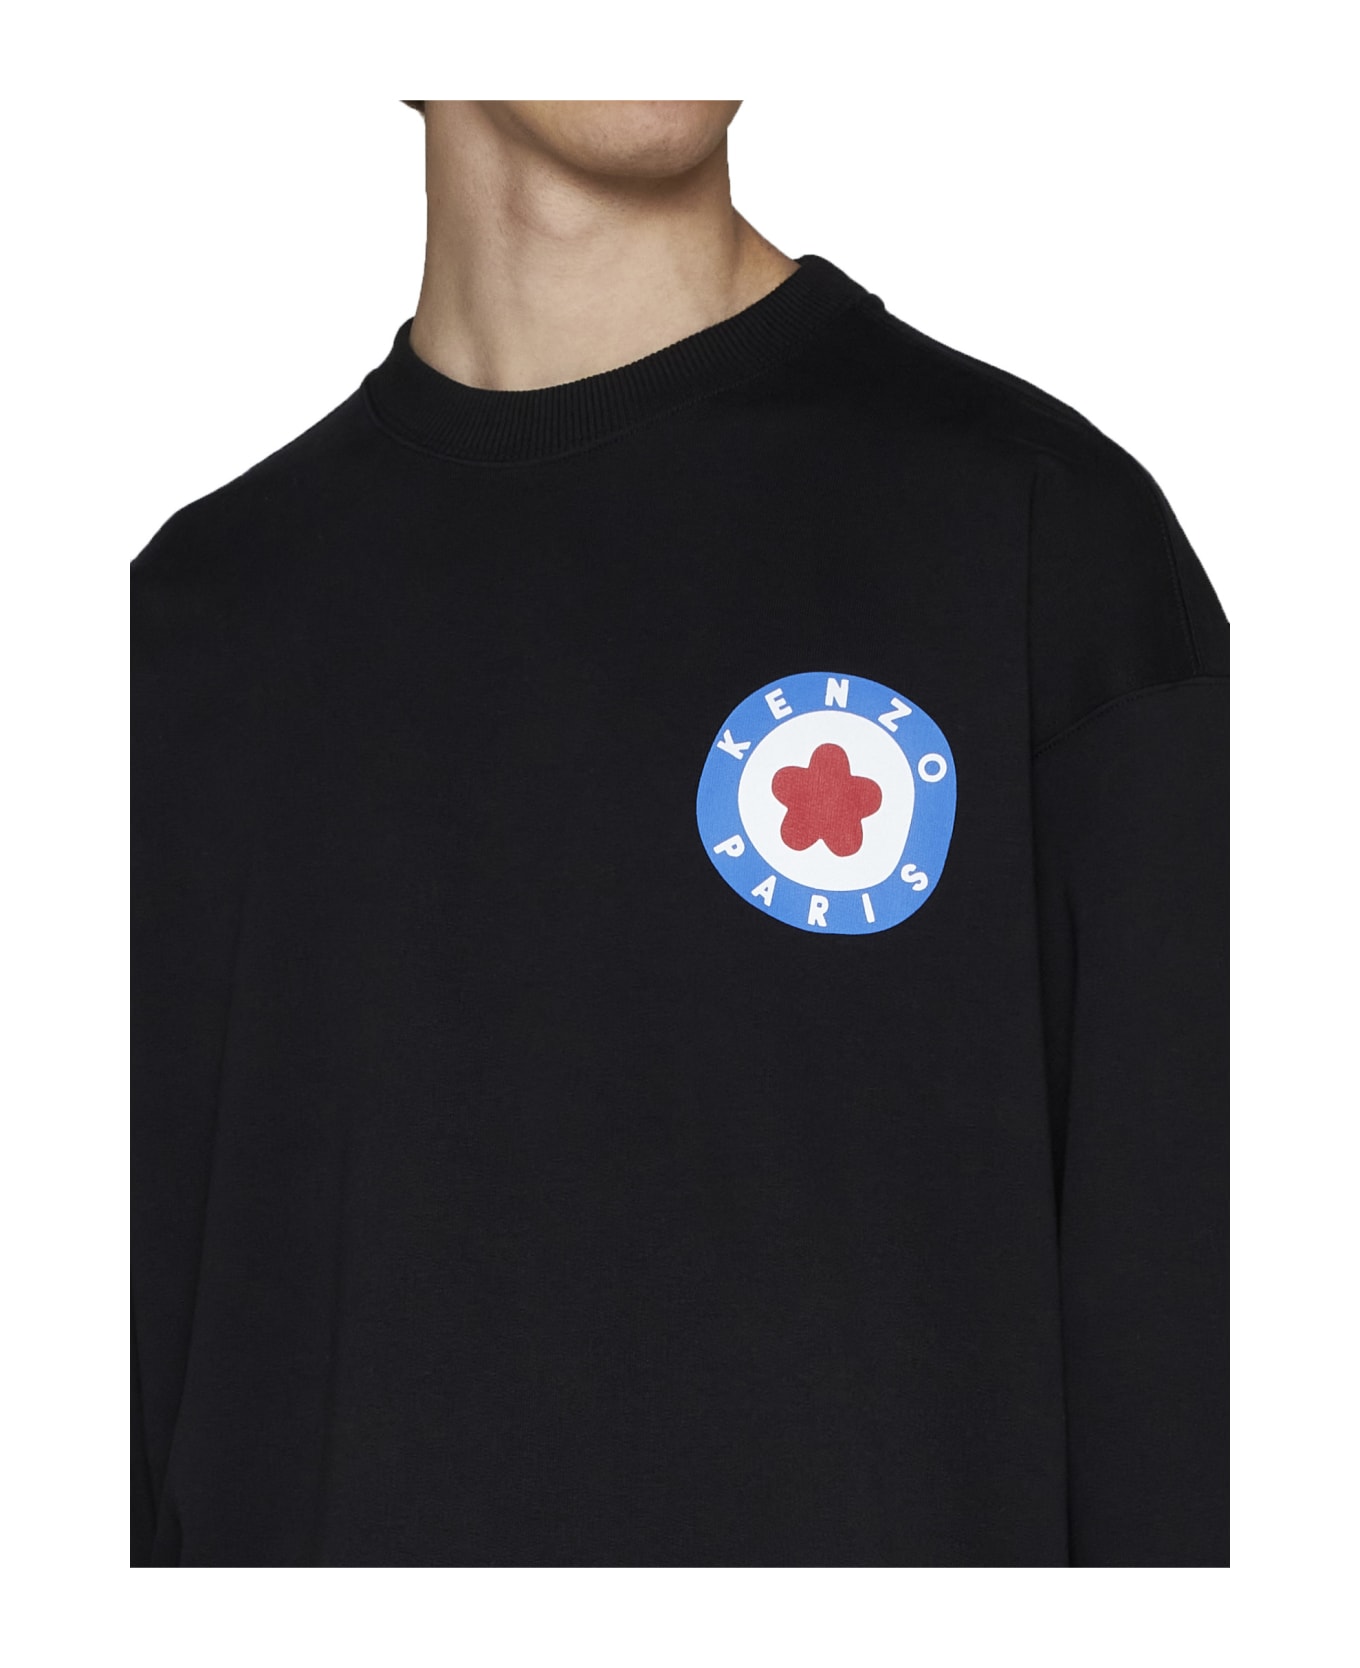 Kenzo Sweatshirt With Logo - Black